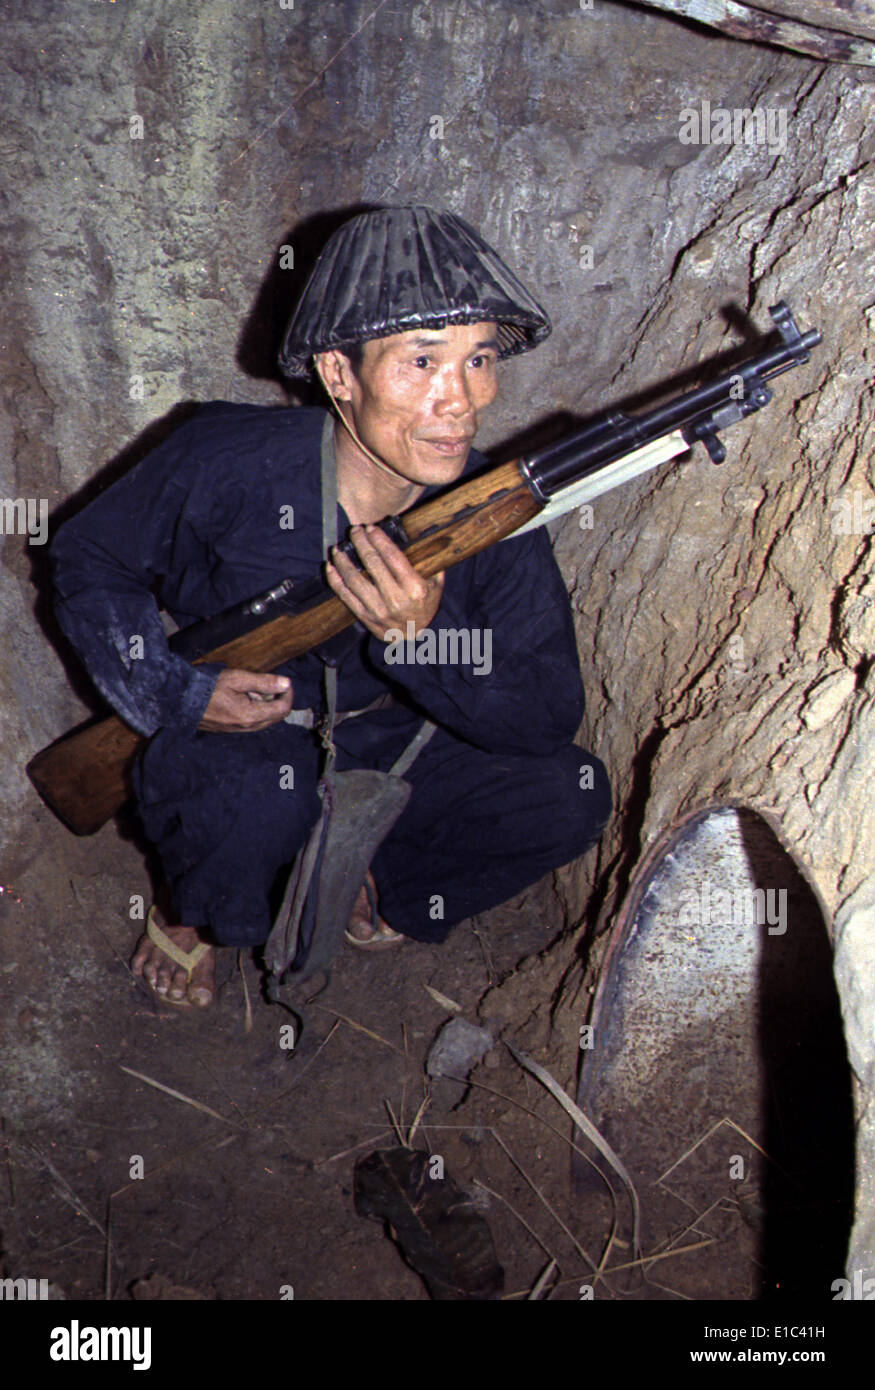 Guerre du Vietnam, un soldat Viet Cong, s'accroupit dans un bunker avec un fusil SKS, fin des années 1960 Banque D'Images